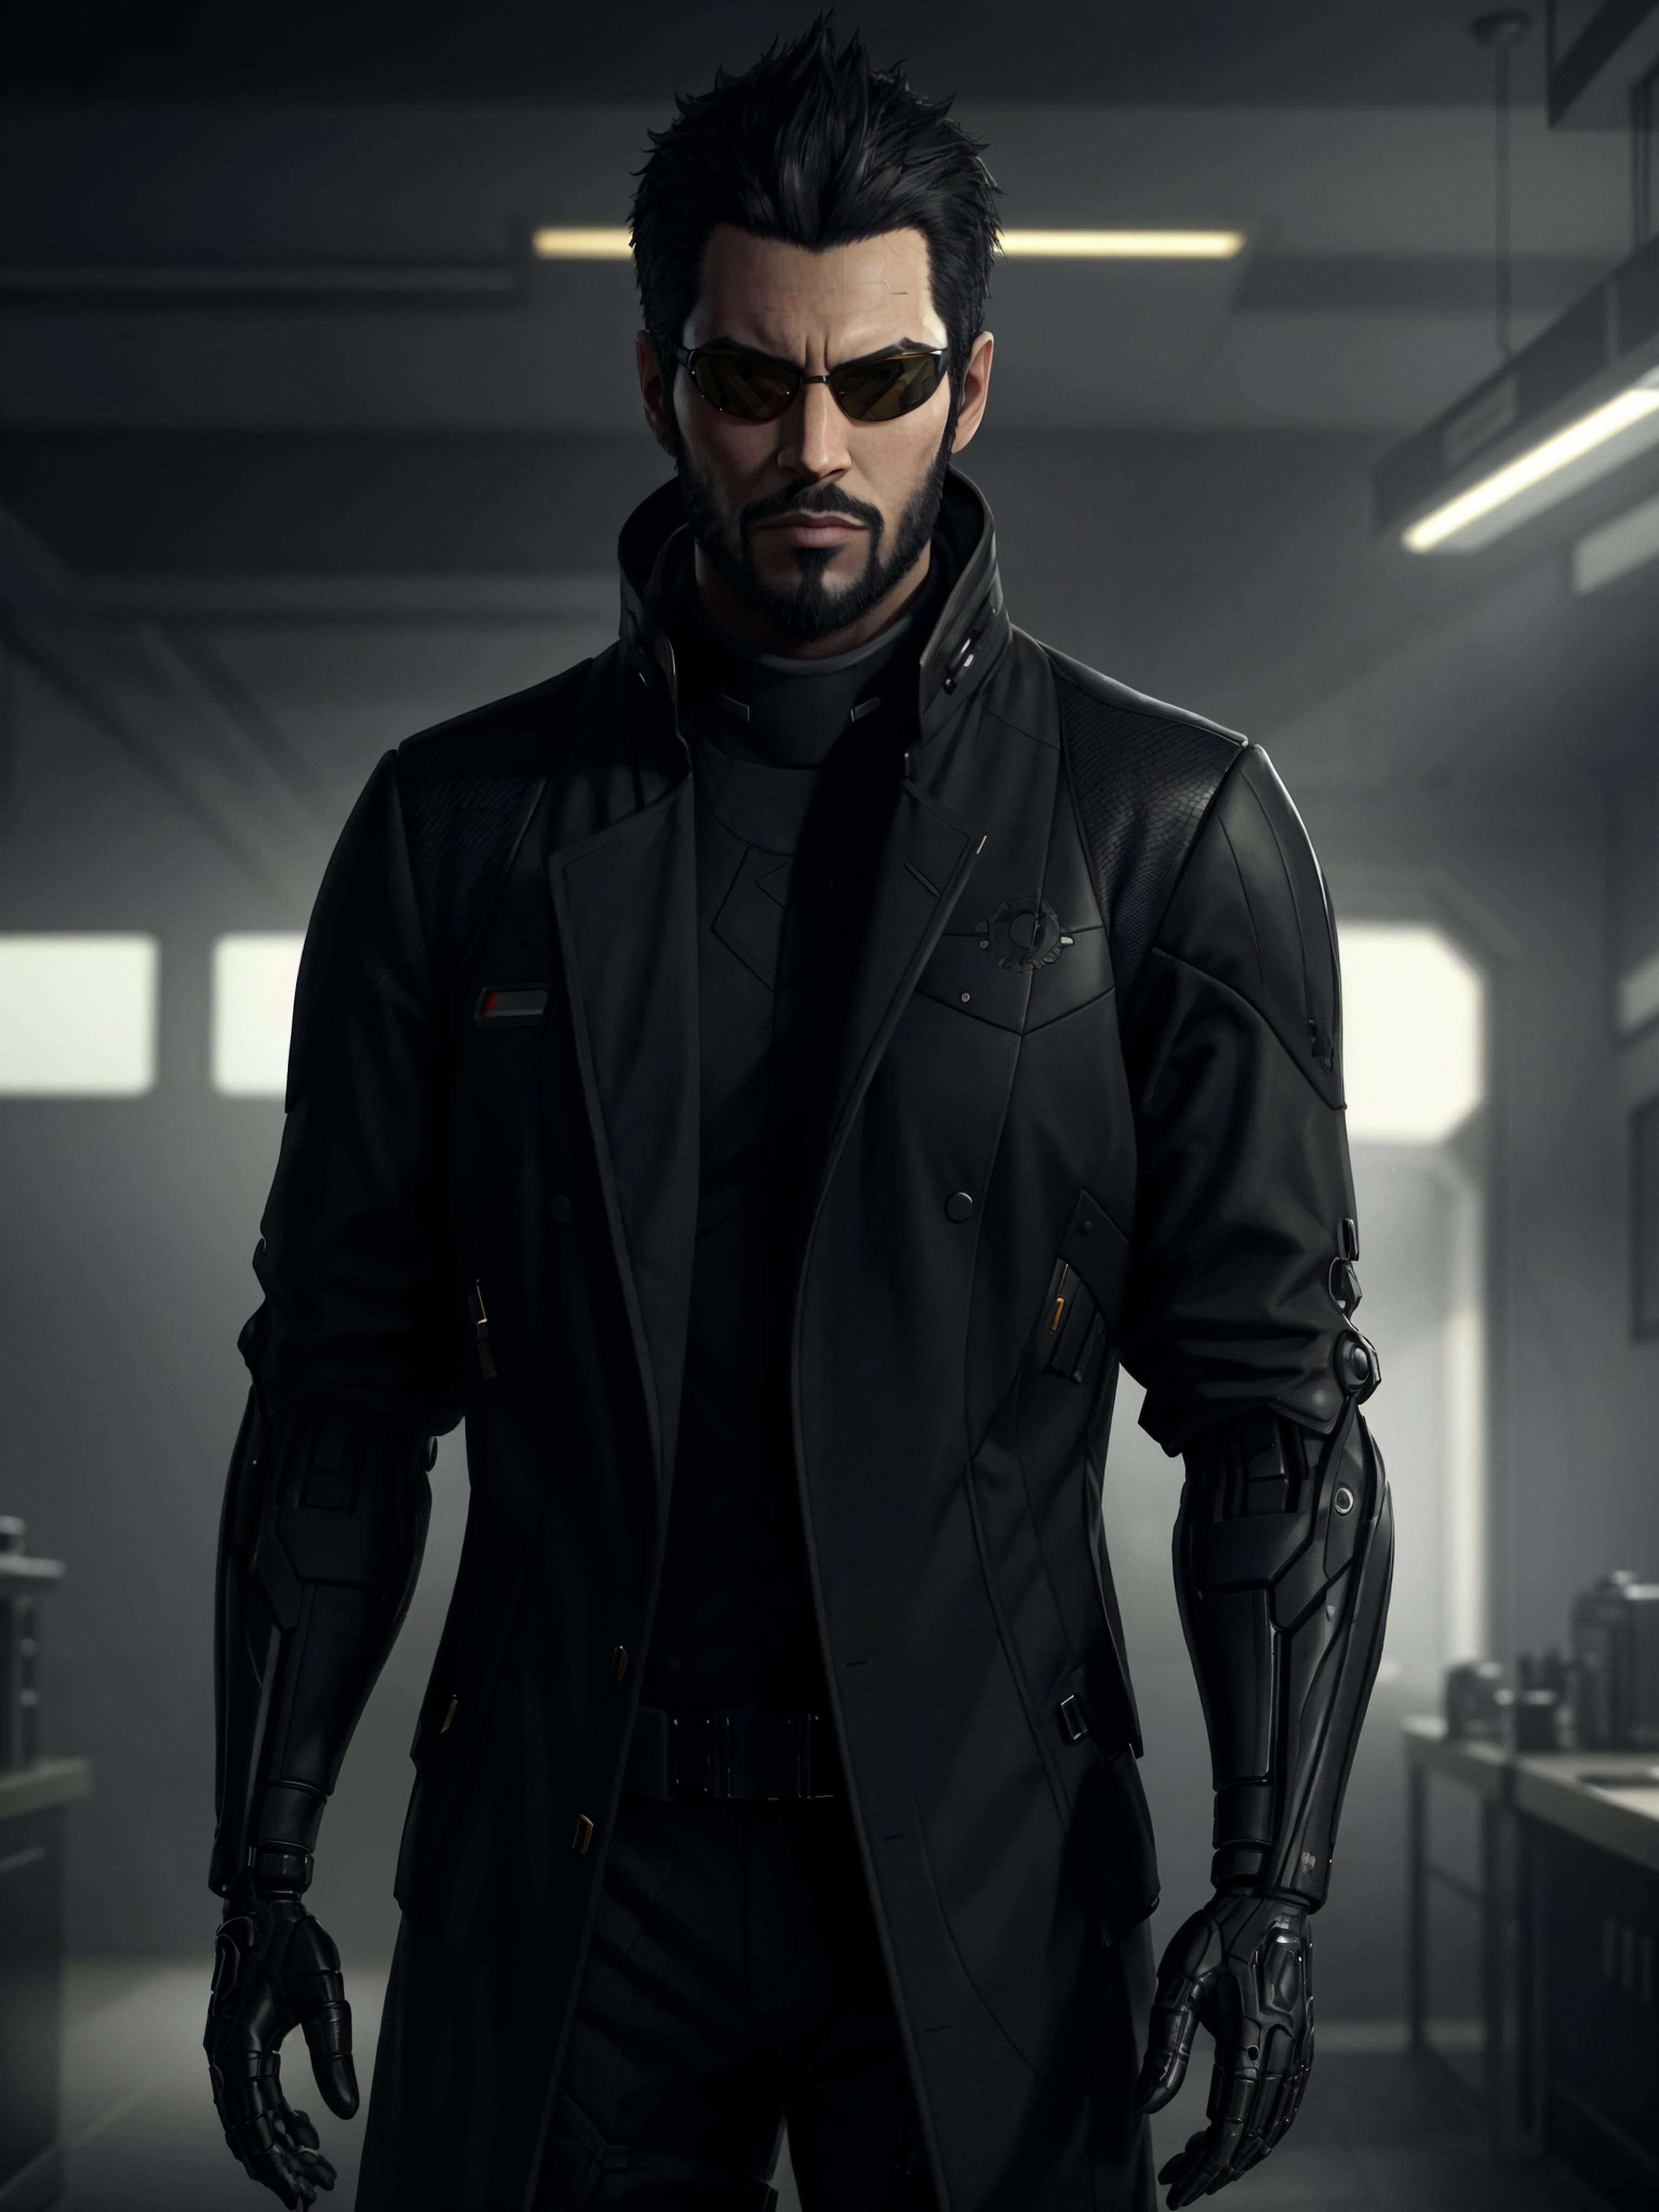 Adam Jensen (Deus Ex) LoRA image by Taloji